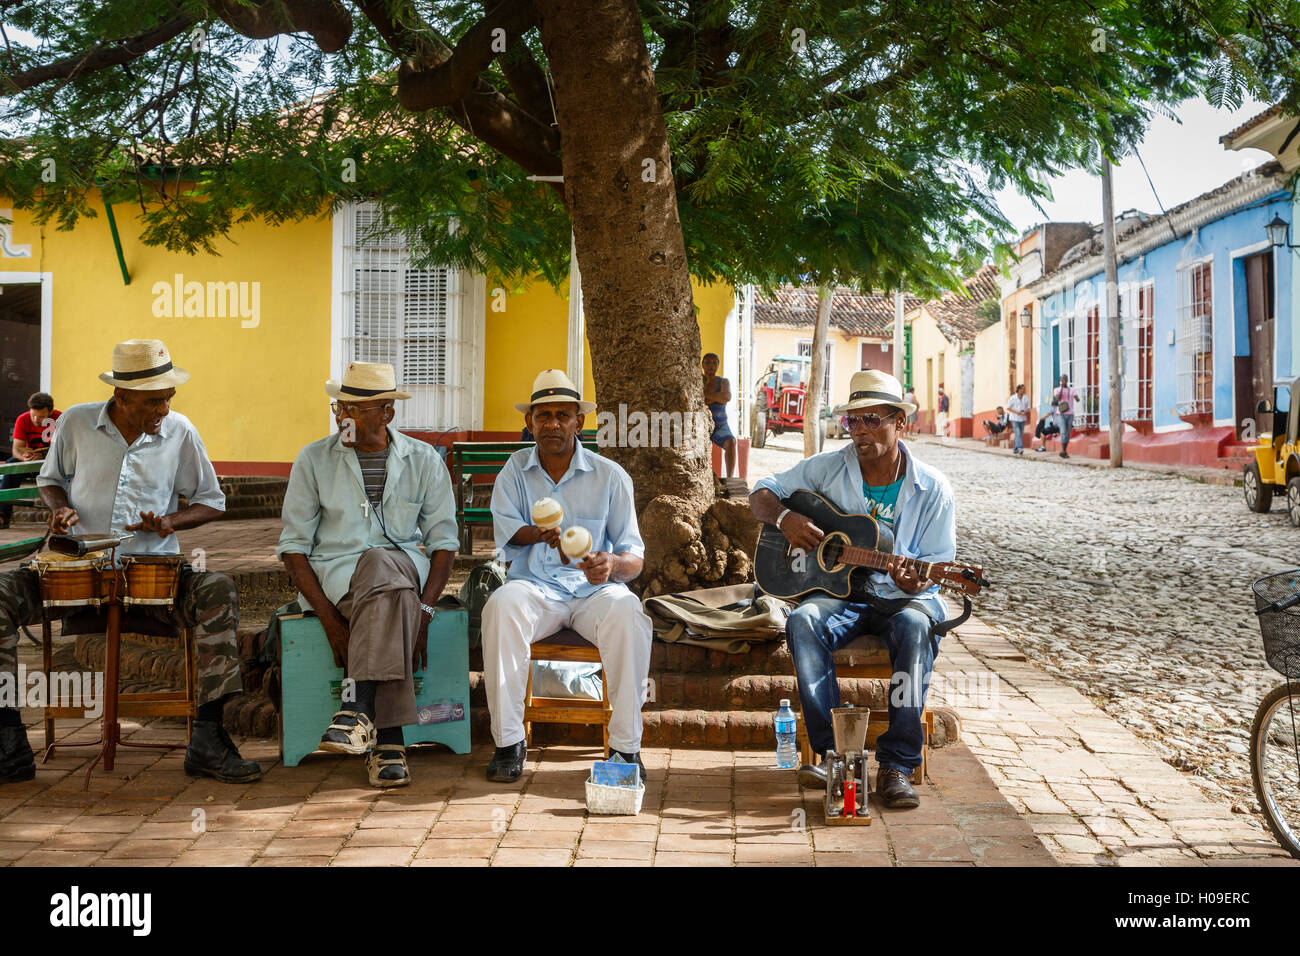 Groupe jouant de la musique sur une place à la Trinité, la province de Sancti Spiritus, Cuba, Antilles, Caraïbes, Amérique Centrale Banque D'Images